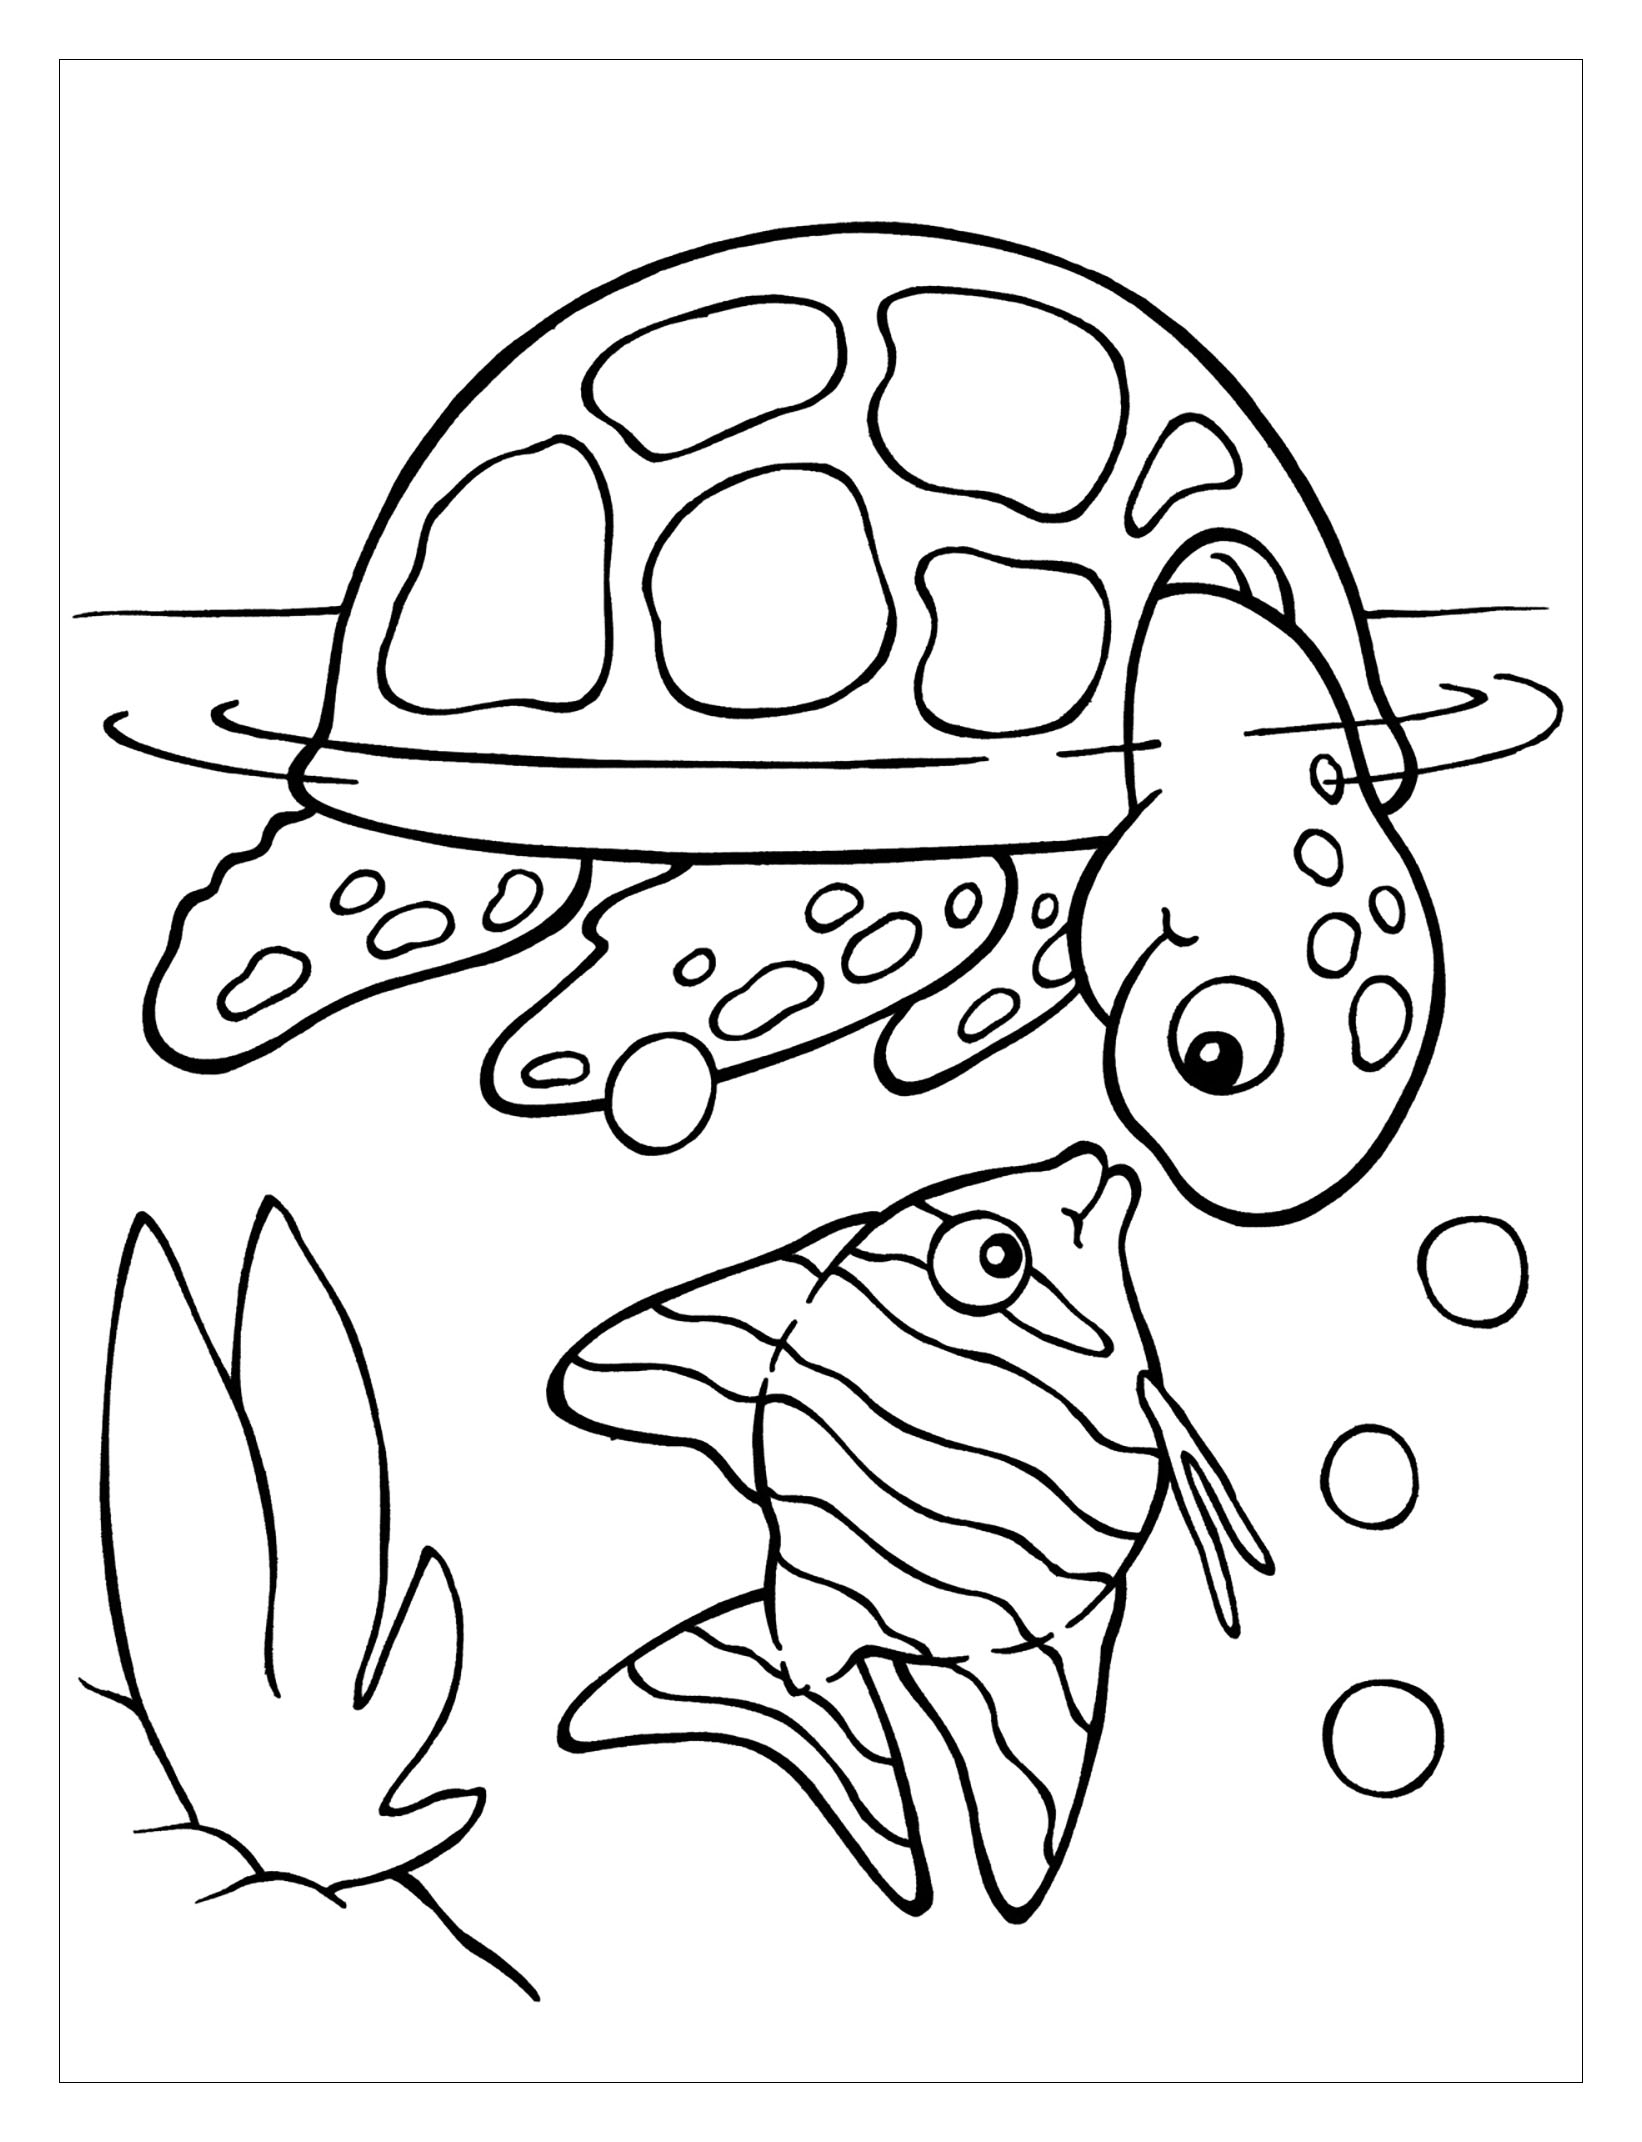 Dibujos para colorear de tortugas